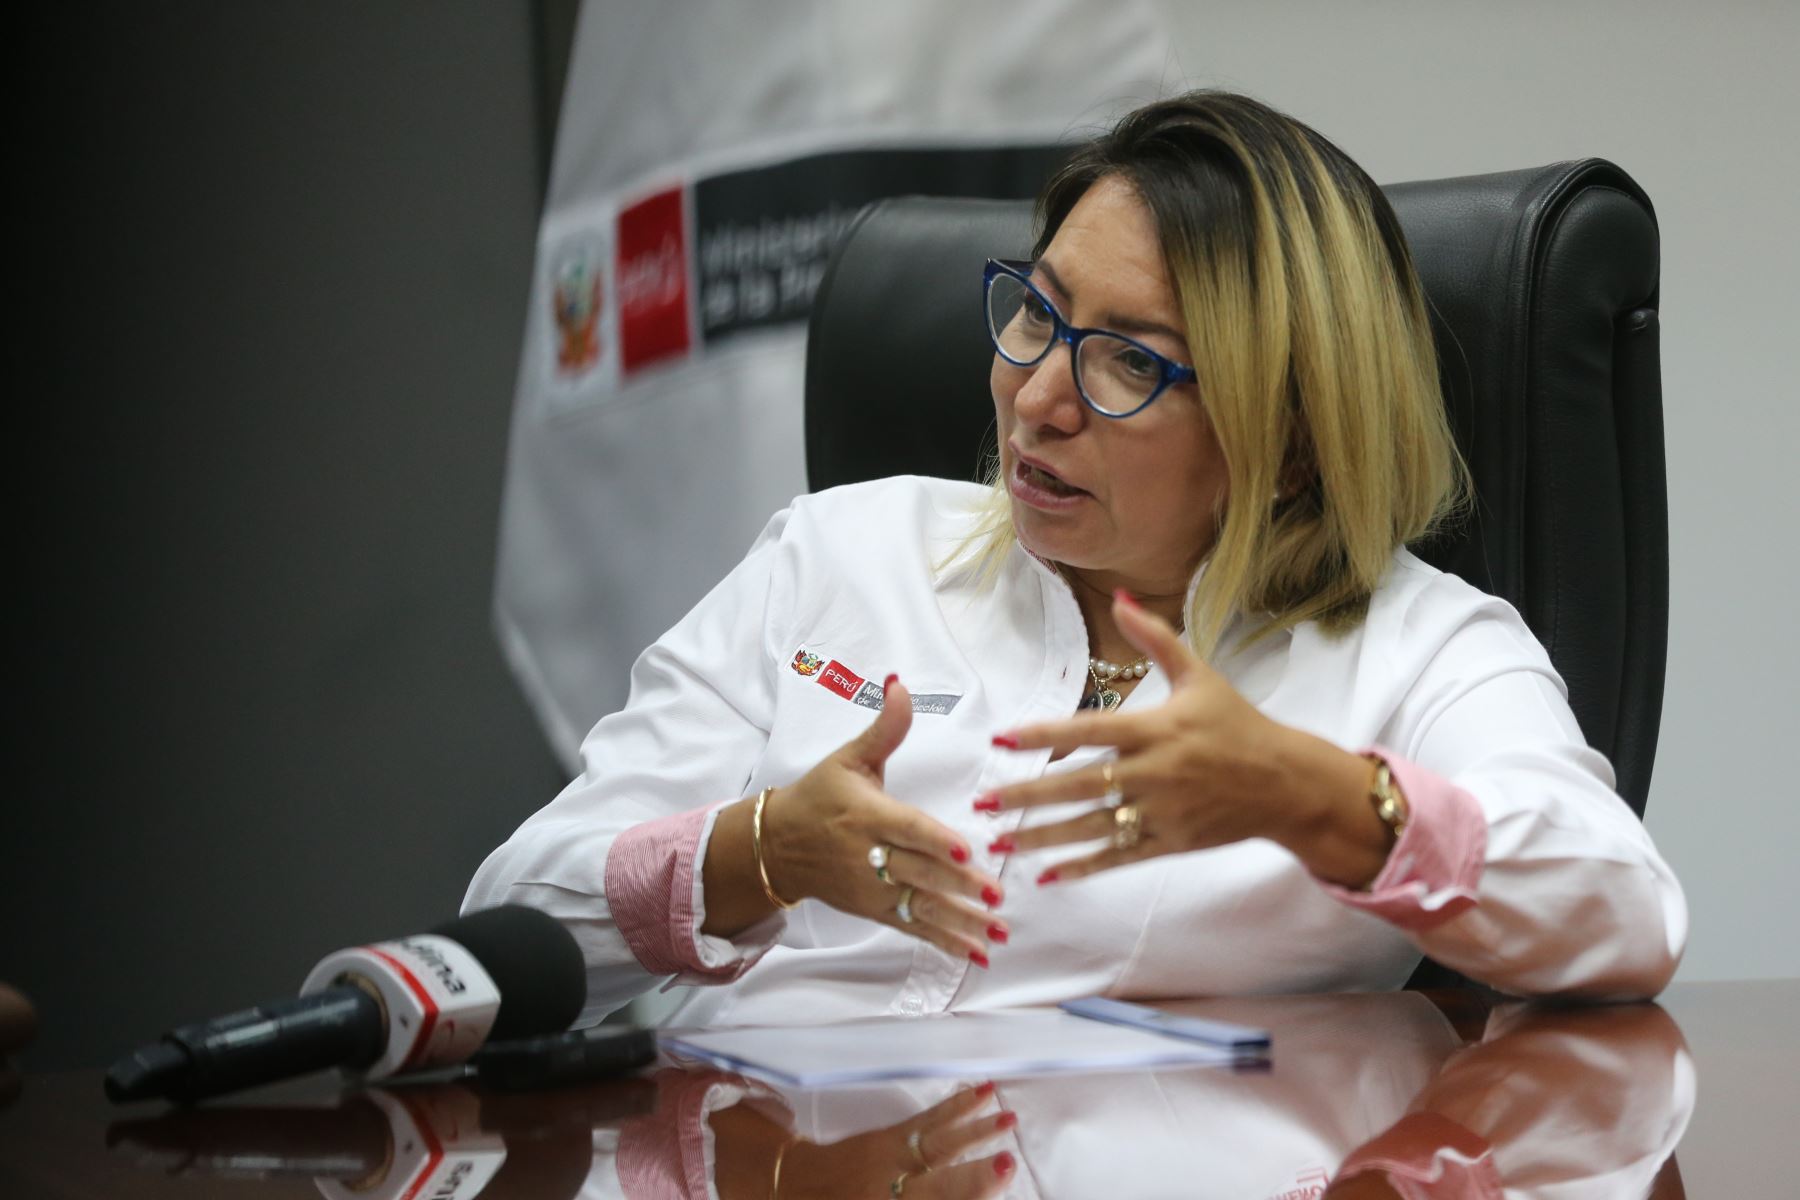 Mejores índices de calidad en la producción de las mypes les brindará mayores oportunidades para crecer, manifestó la ministra Rocío Barrios. .ANDINA/Jhony Laurente